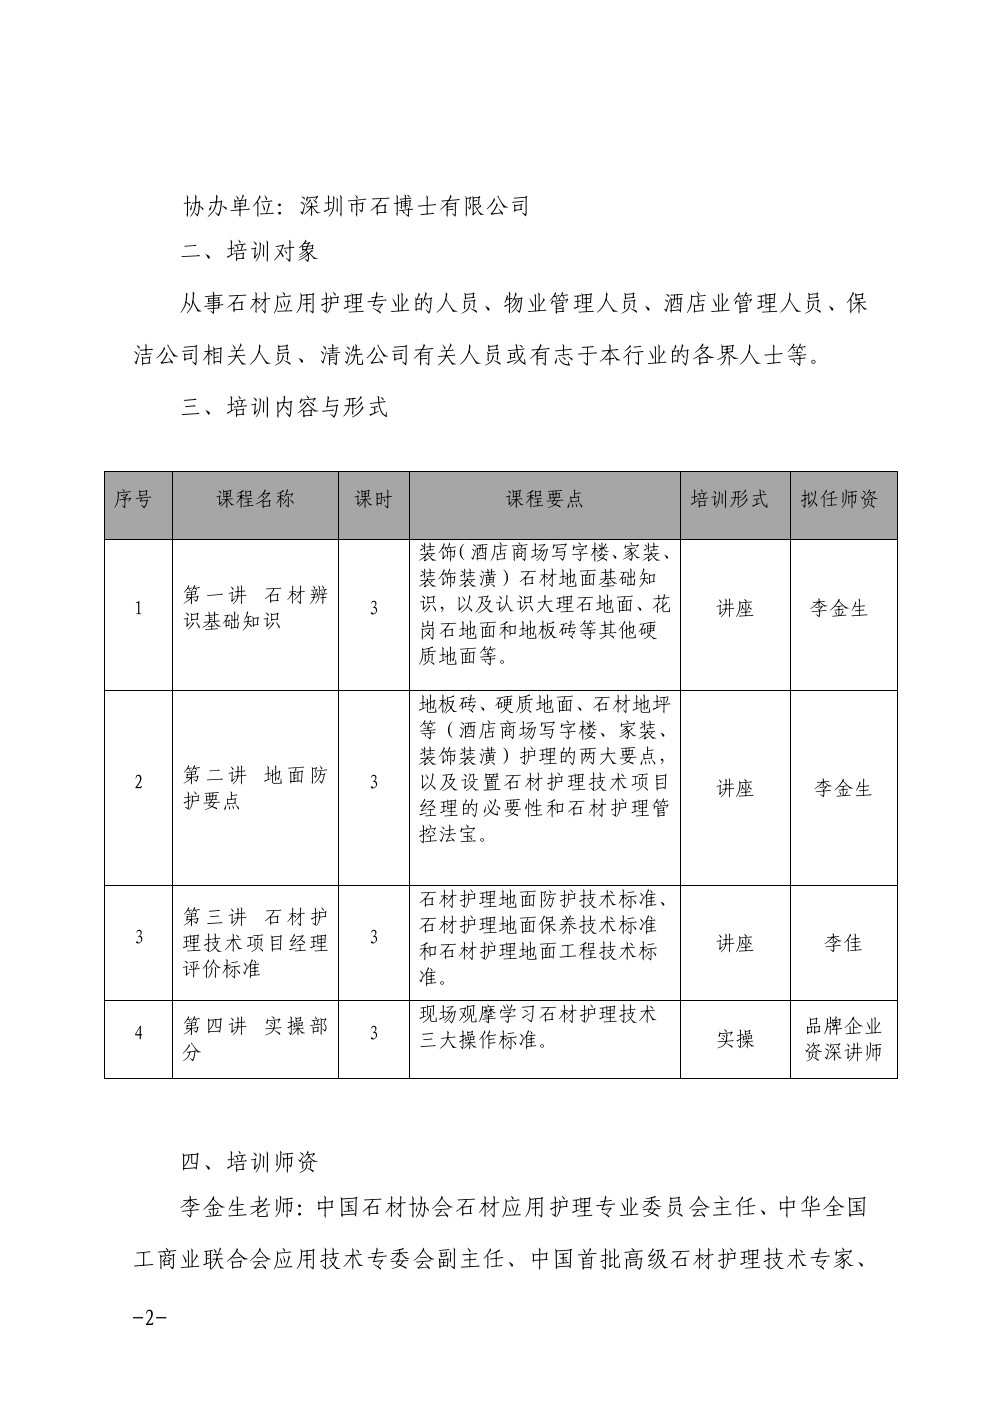 关于在深圳举办石材护理技术项目经理培训班的通知2-深圳物管学院